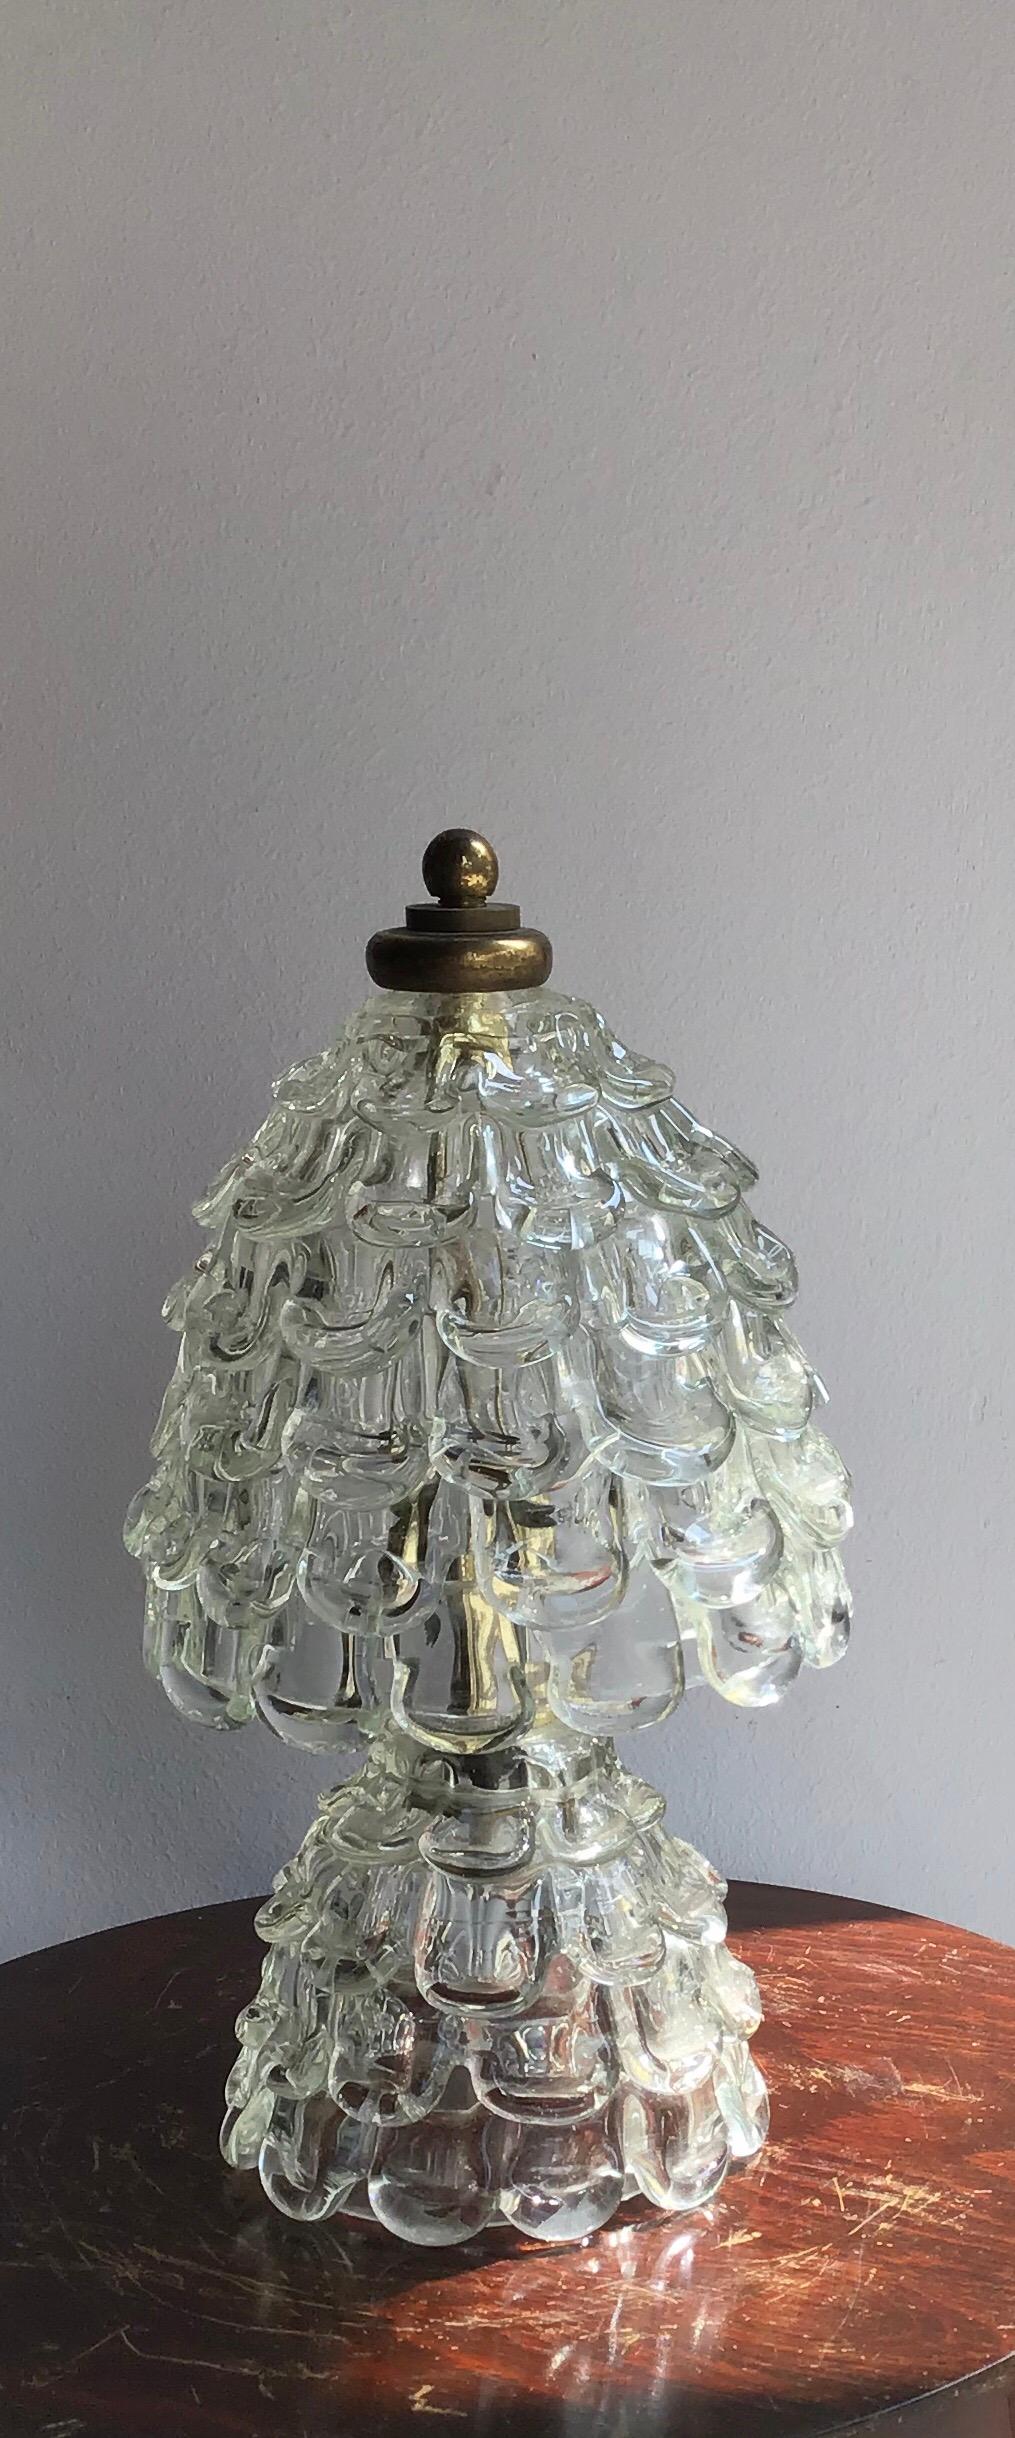 Barovier e Toso Table Lamp “Orecchiette” Murano Glass Brass, 1940, Italy 2